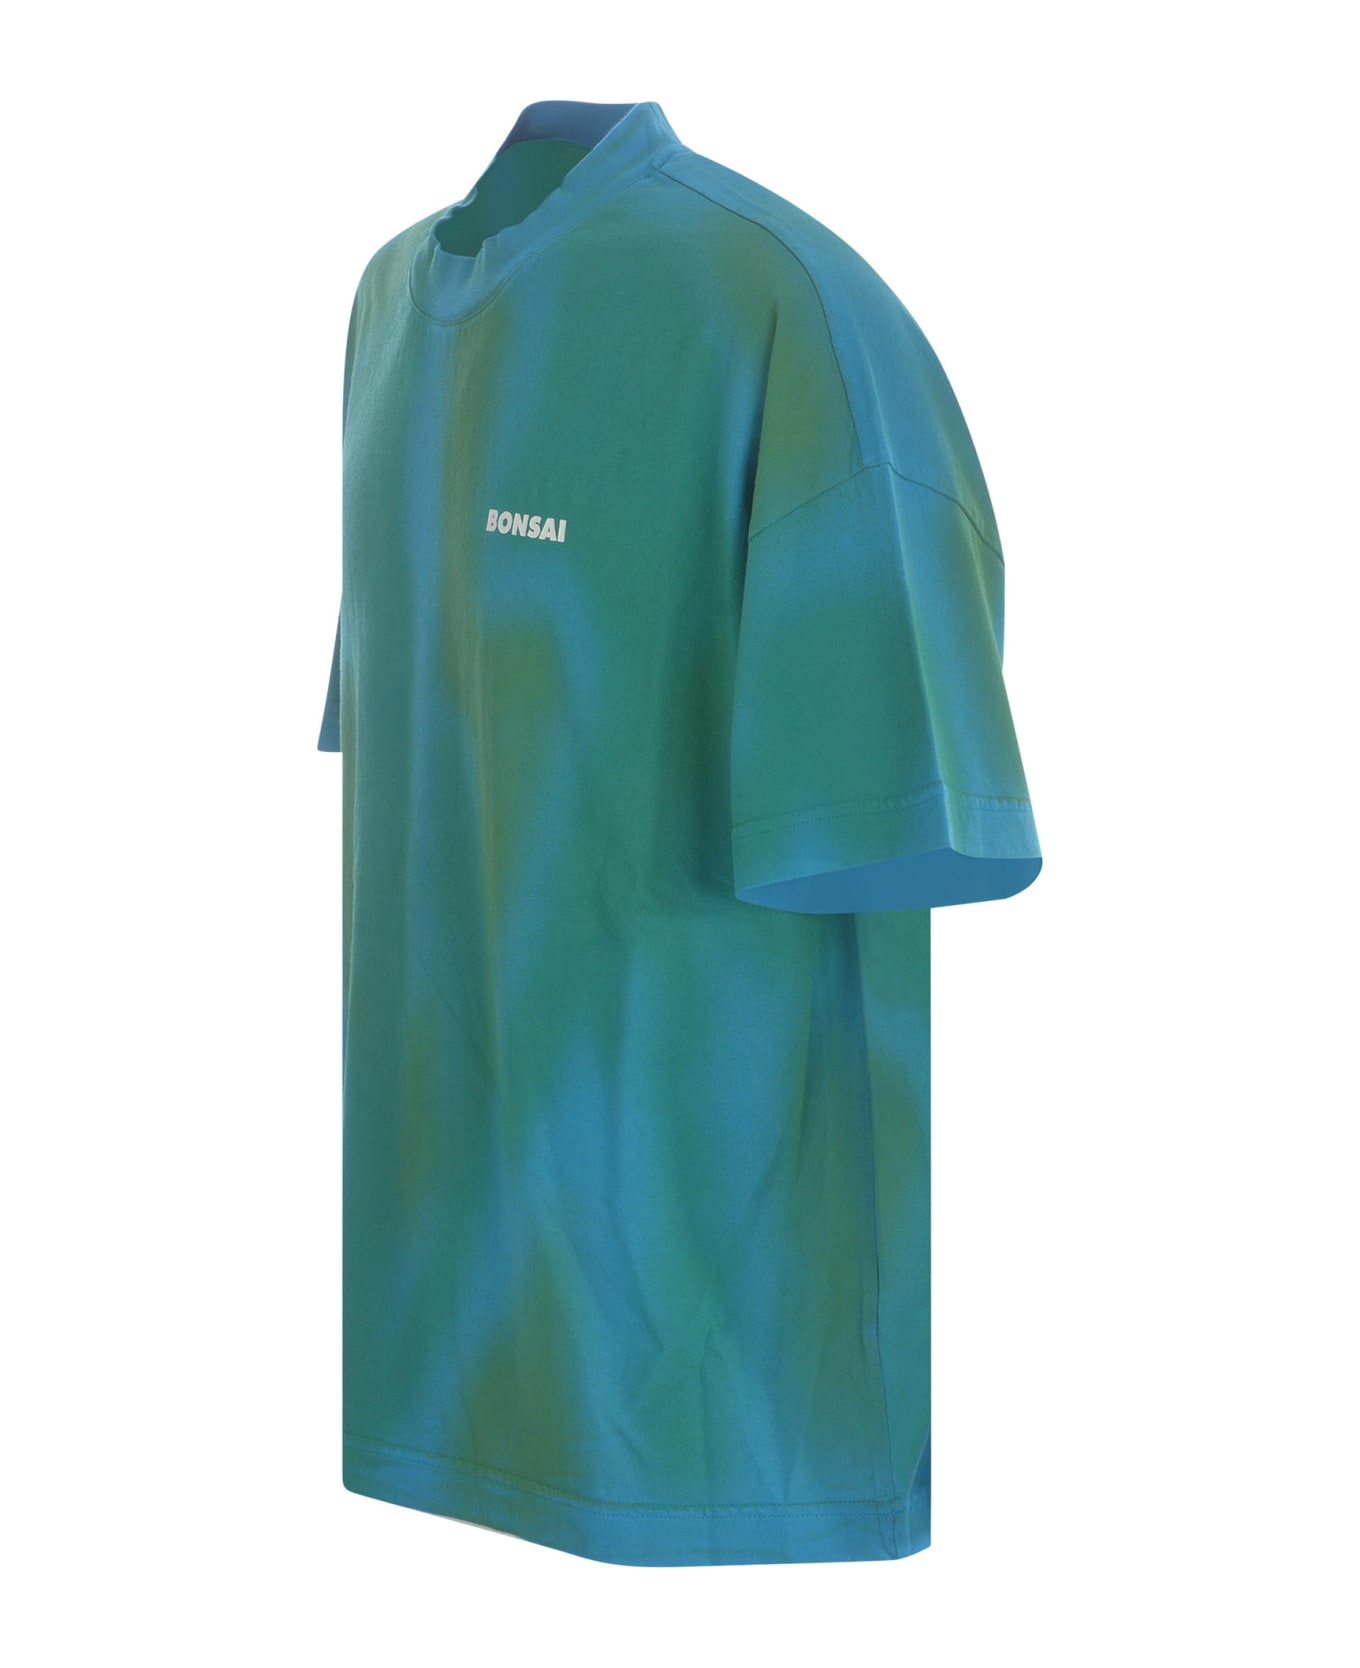 Bonsai T-shirt Bonsai "spray" In Cotton - Azzurro